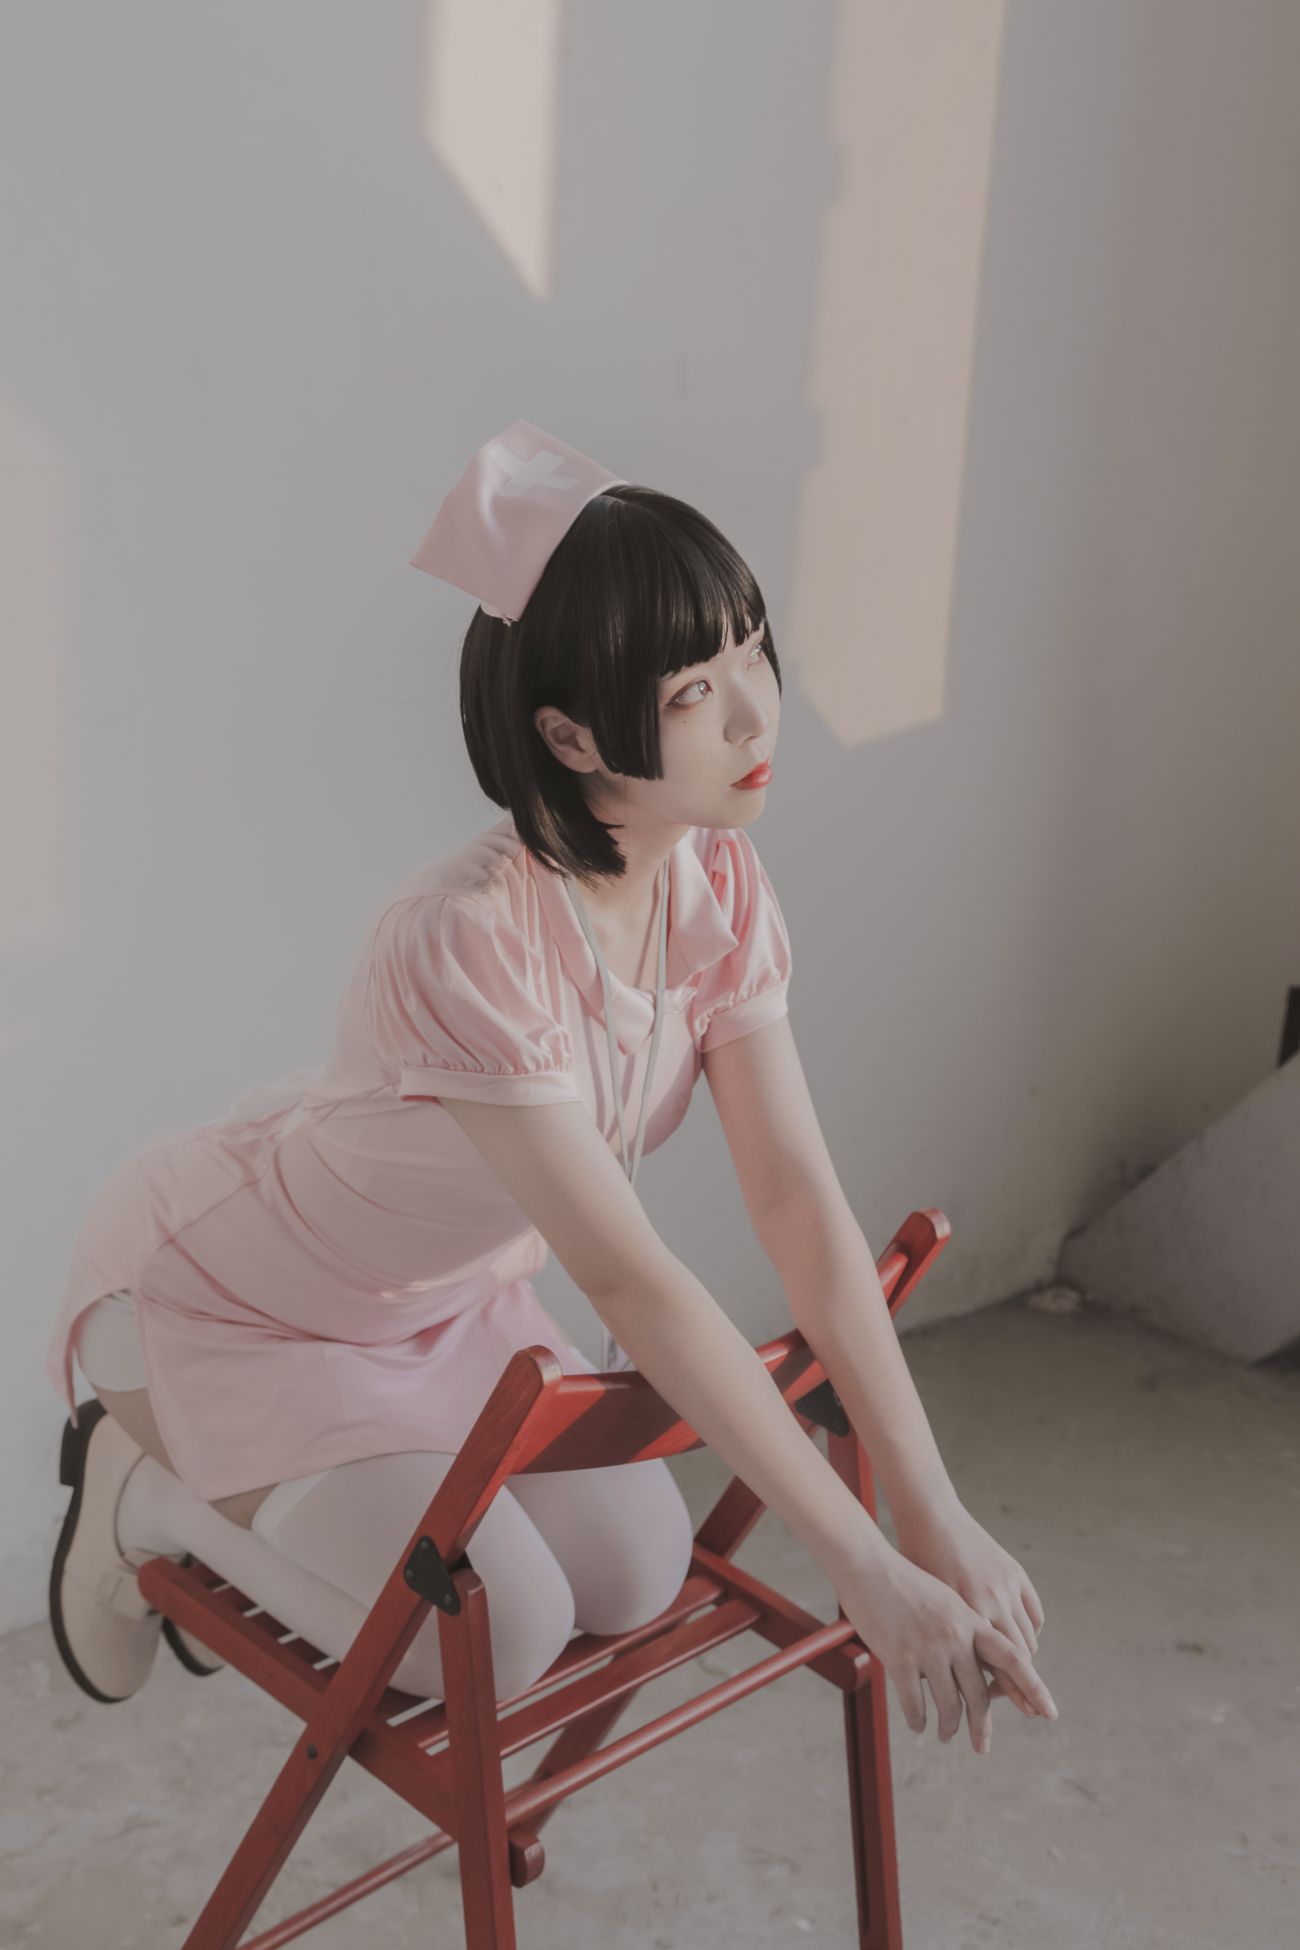 微博美少女Fushii海堂Cosplay性感写真护士 (25)